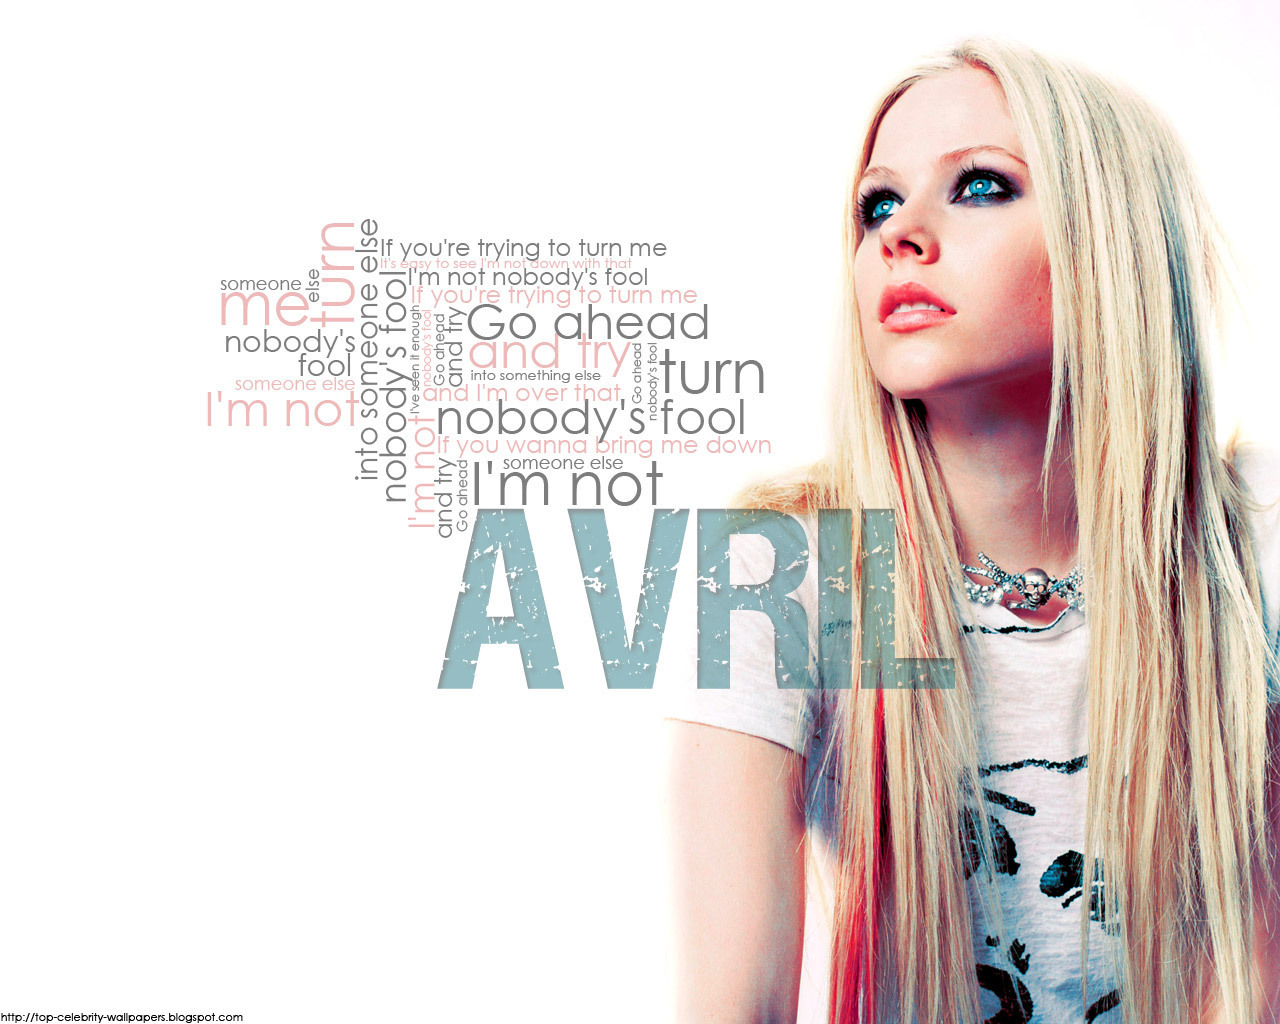 Avril Lavigne Exclusive HD Wallpaper